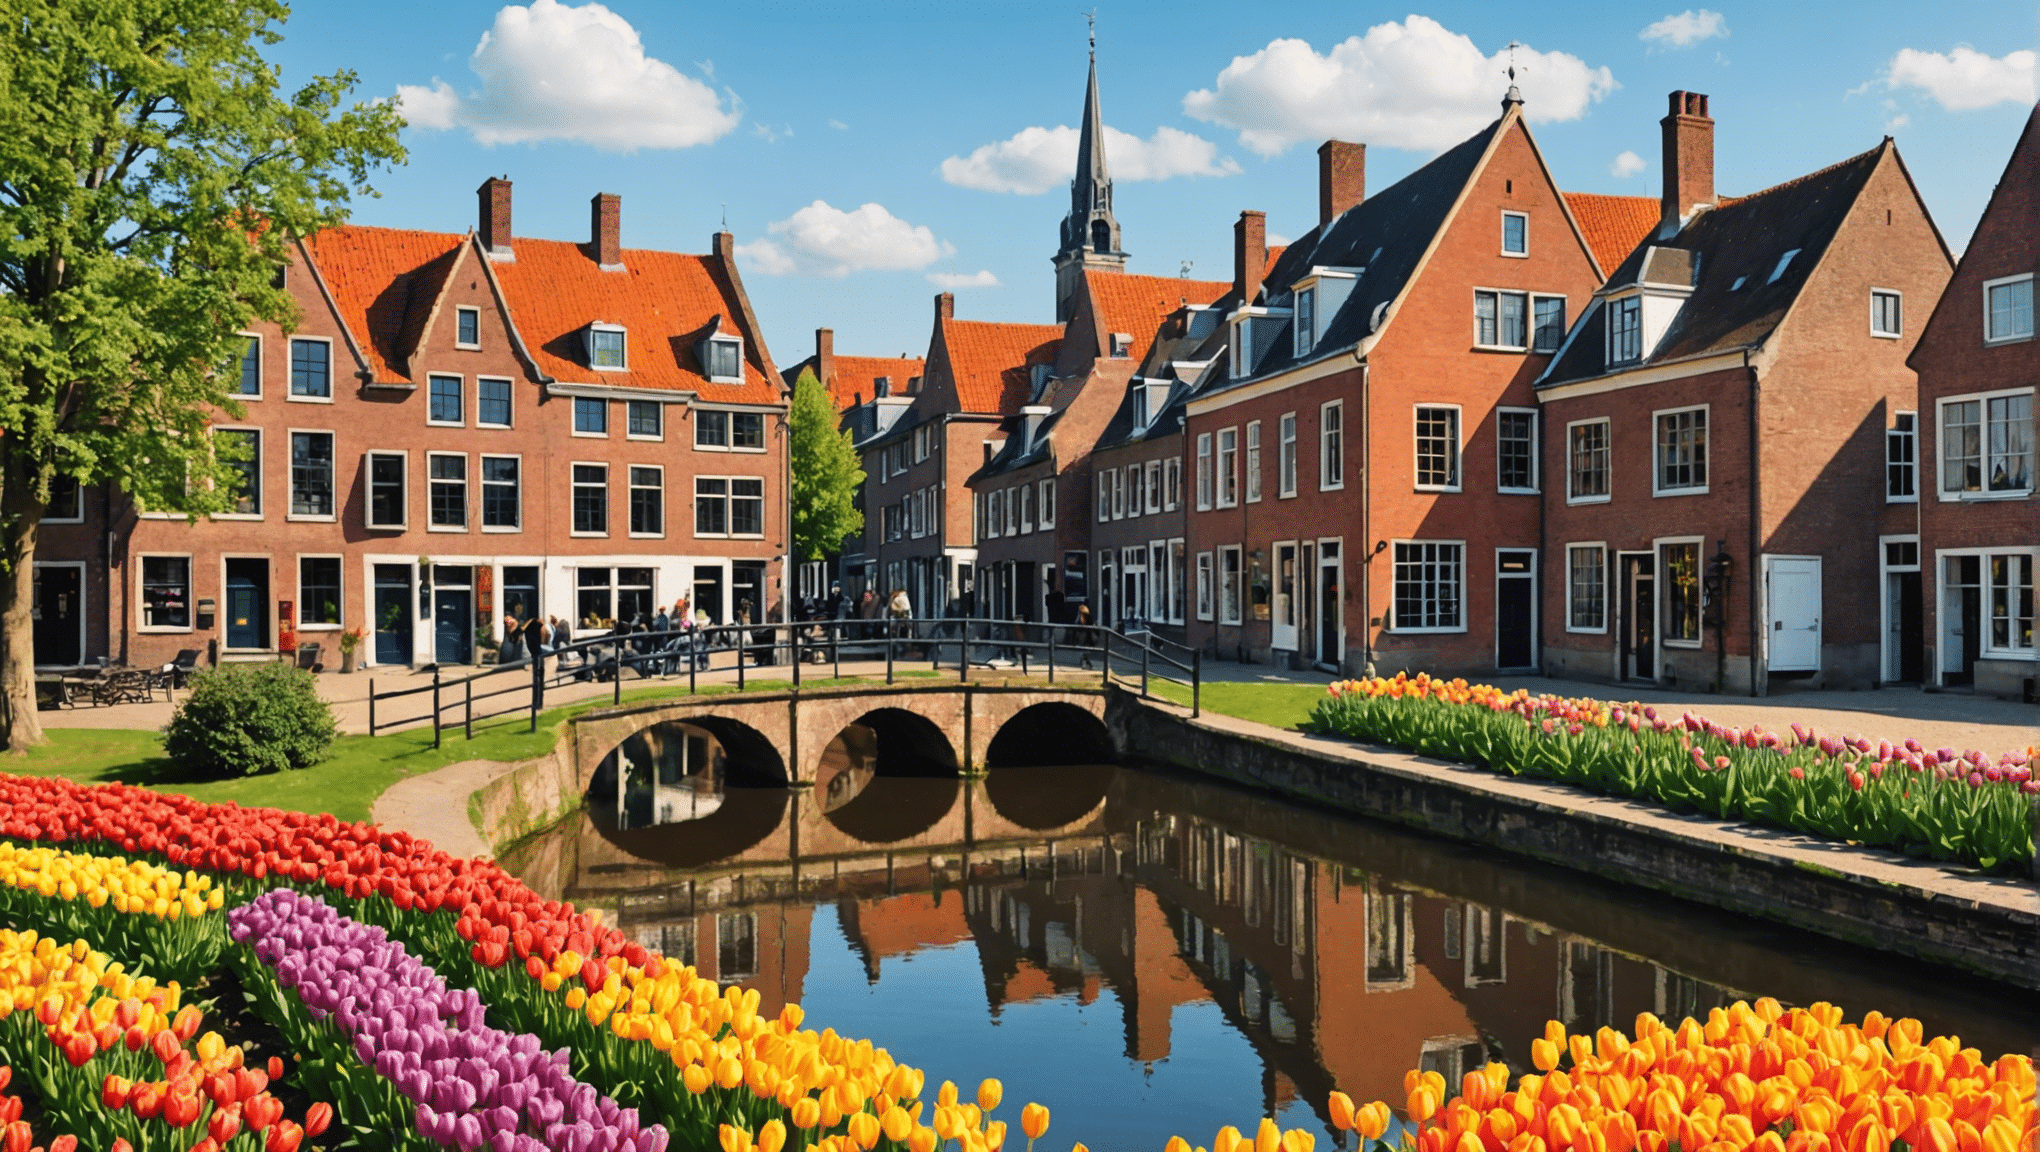 प्रतिष्ठित पवन चक्कियों, शानदार ट्यूलिप क्षेत्रों और आकर्षक नहरों वाले इस देश के माध्यम से एक अविस्मरणीय यात्रा पर नीदरलैंड के आकर्षण की खोज करें।